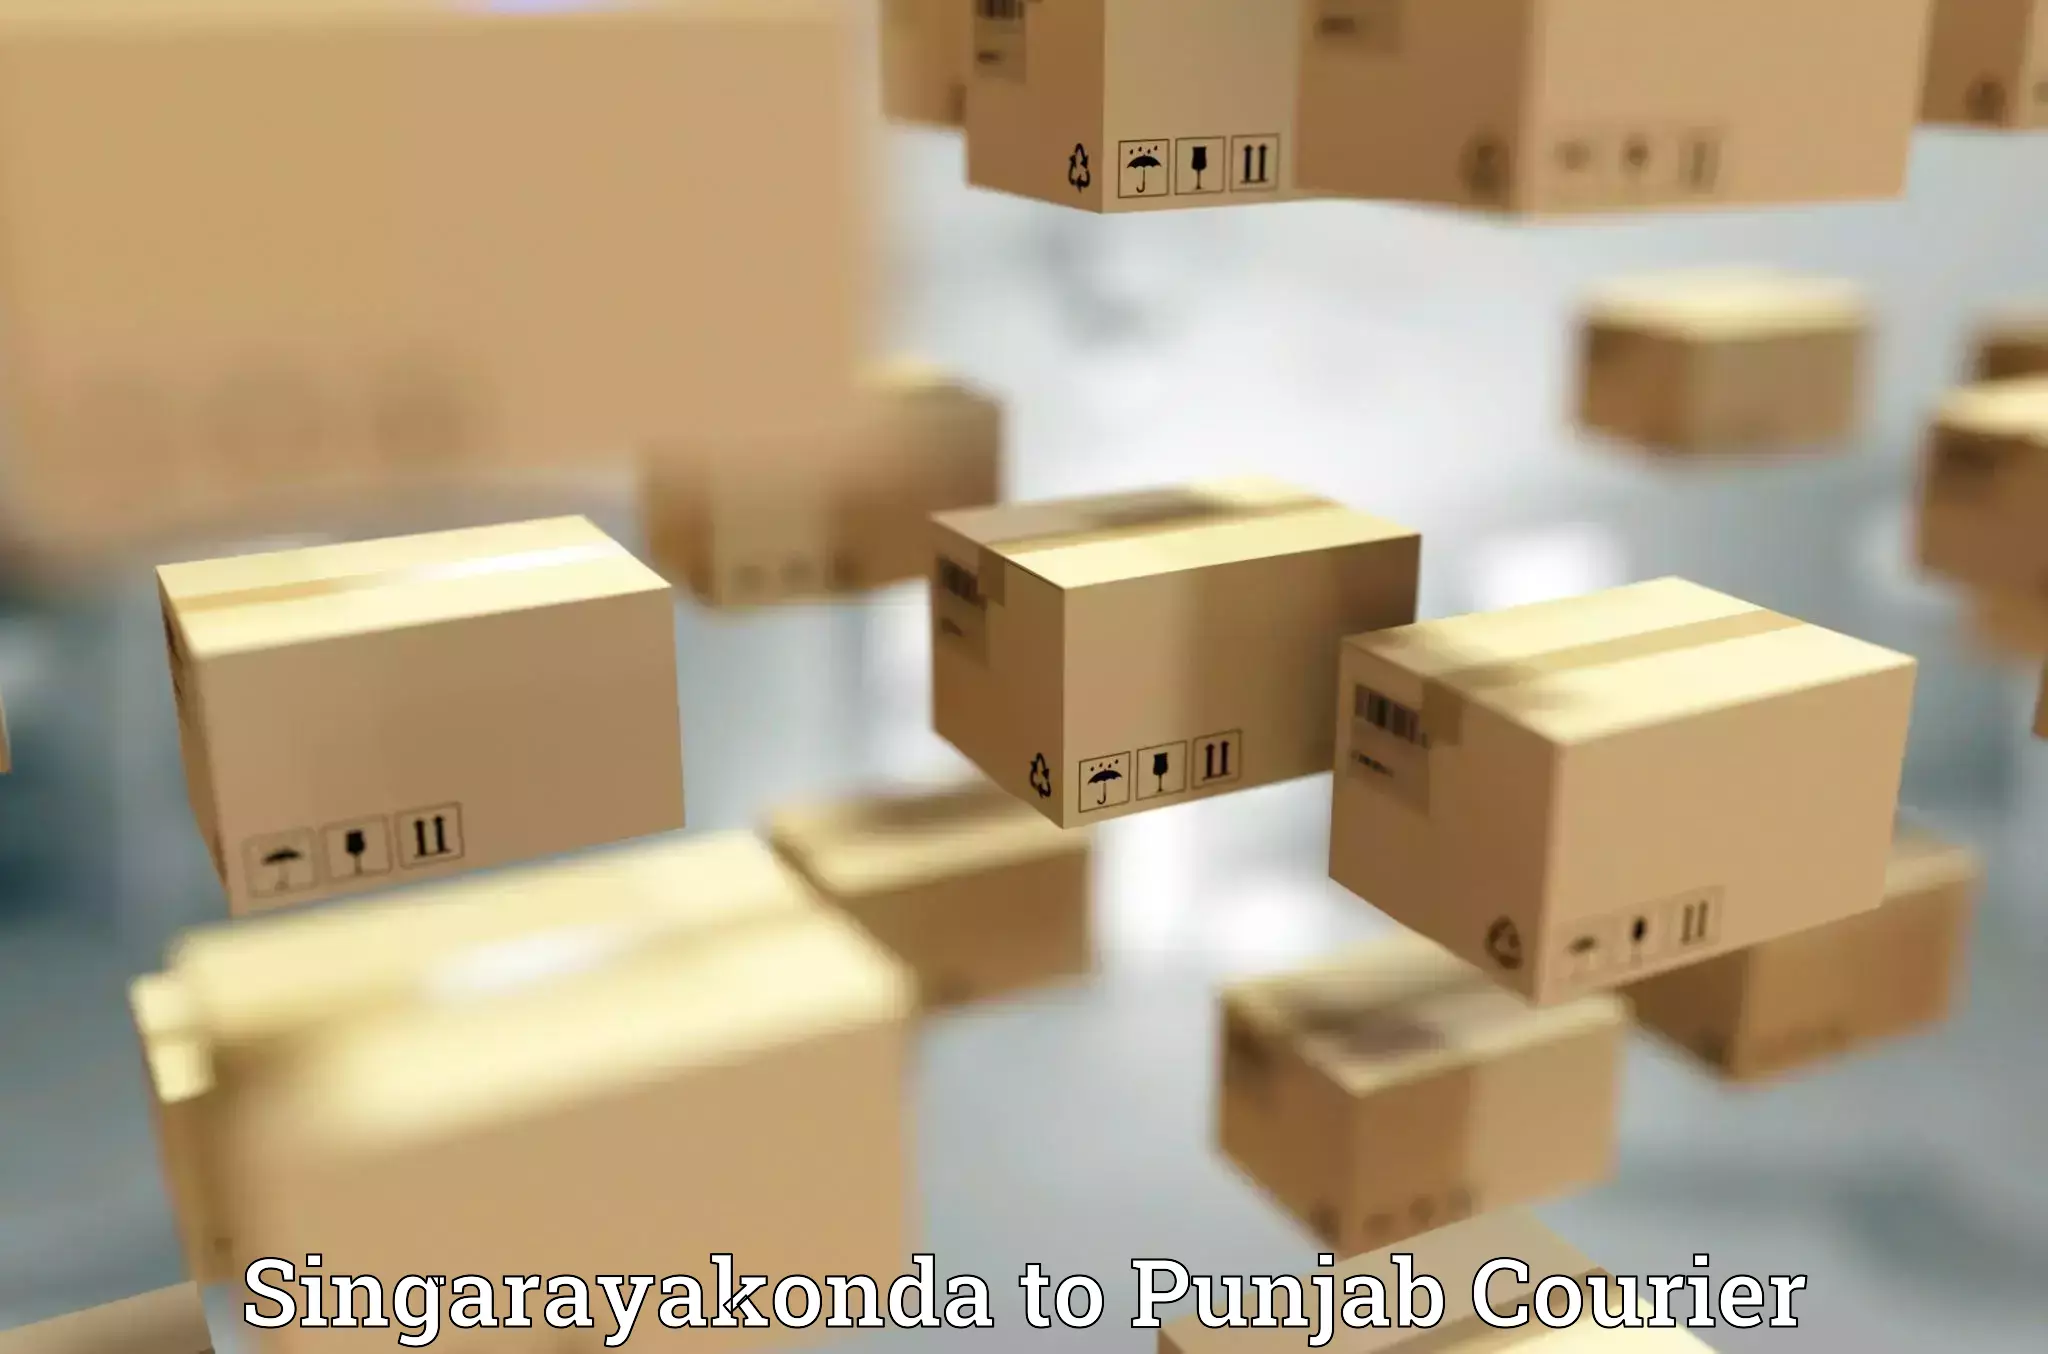 Baggage shipping quotes Singarayakonda to Punjab